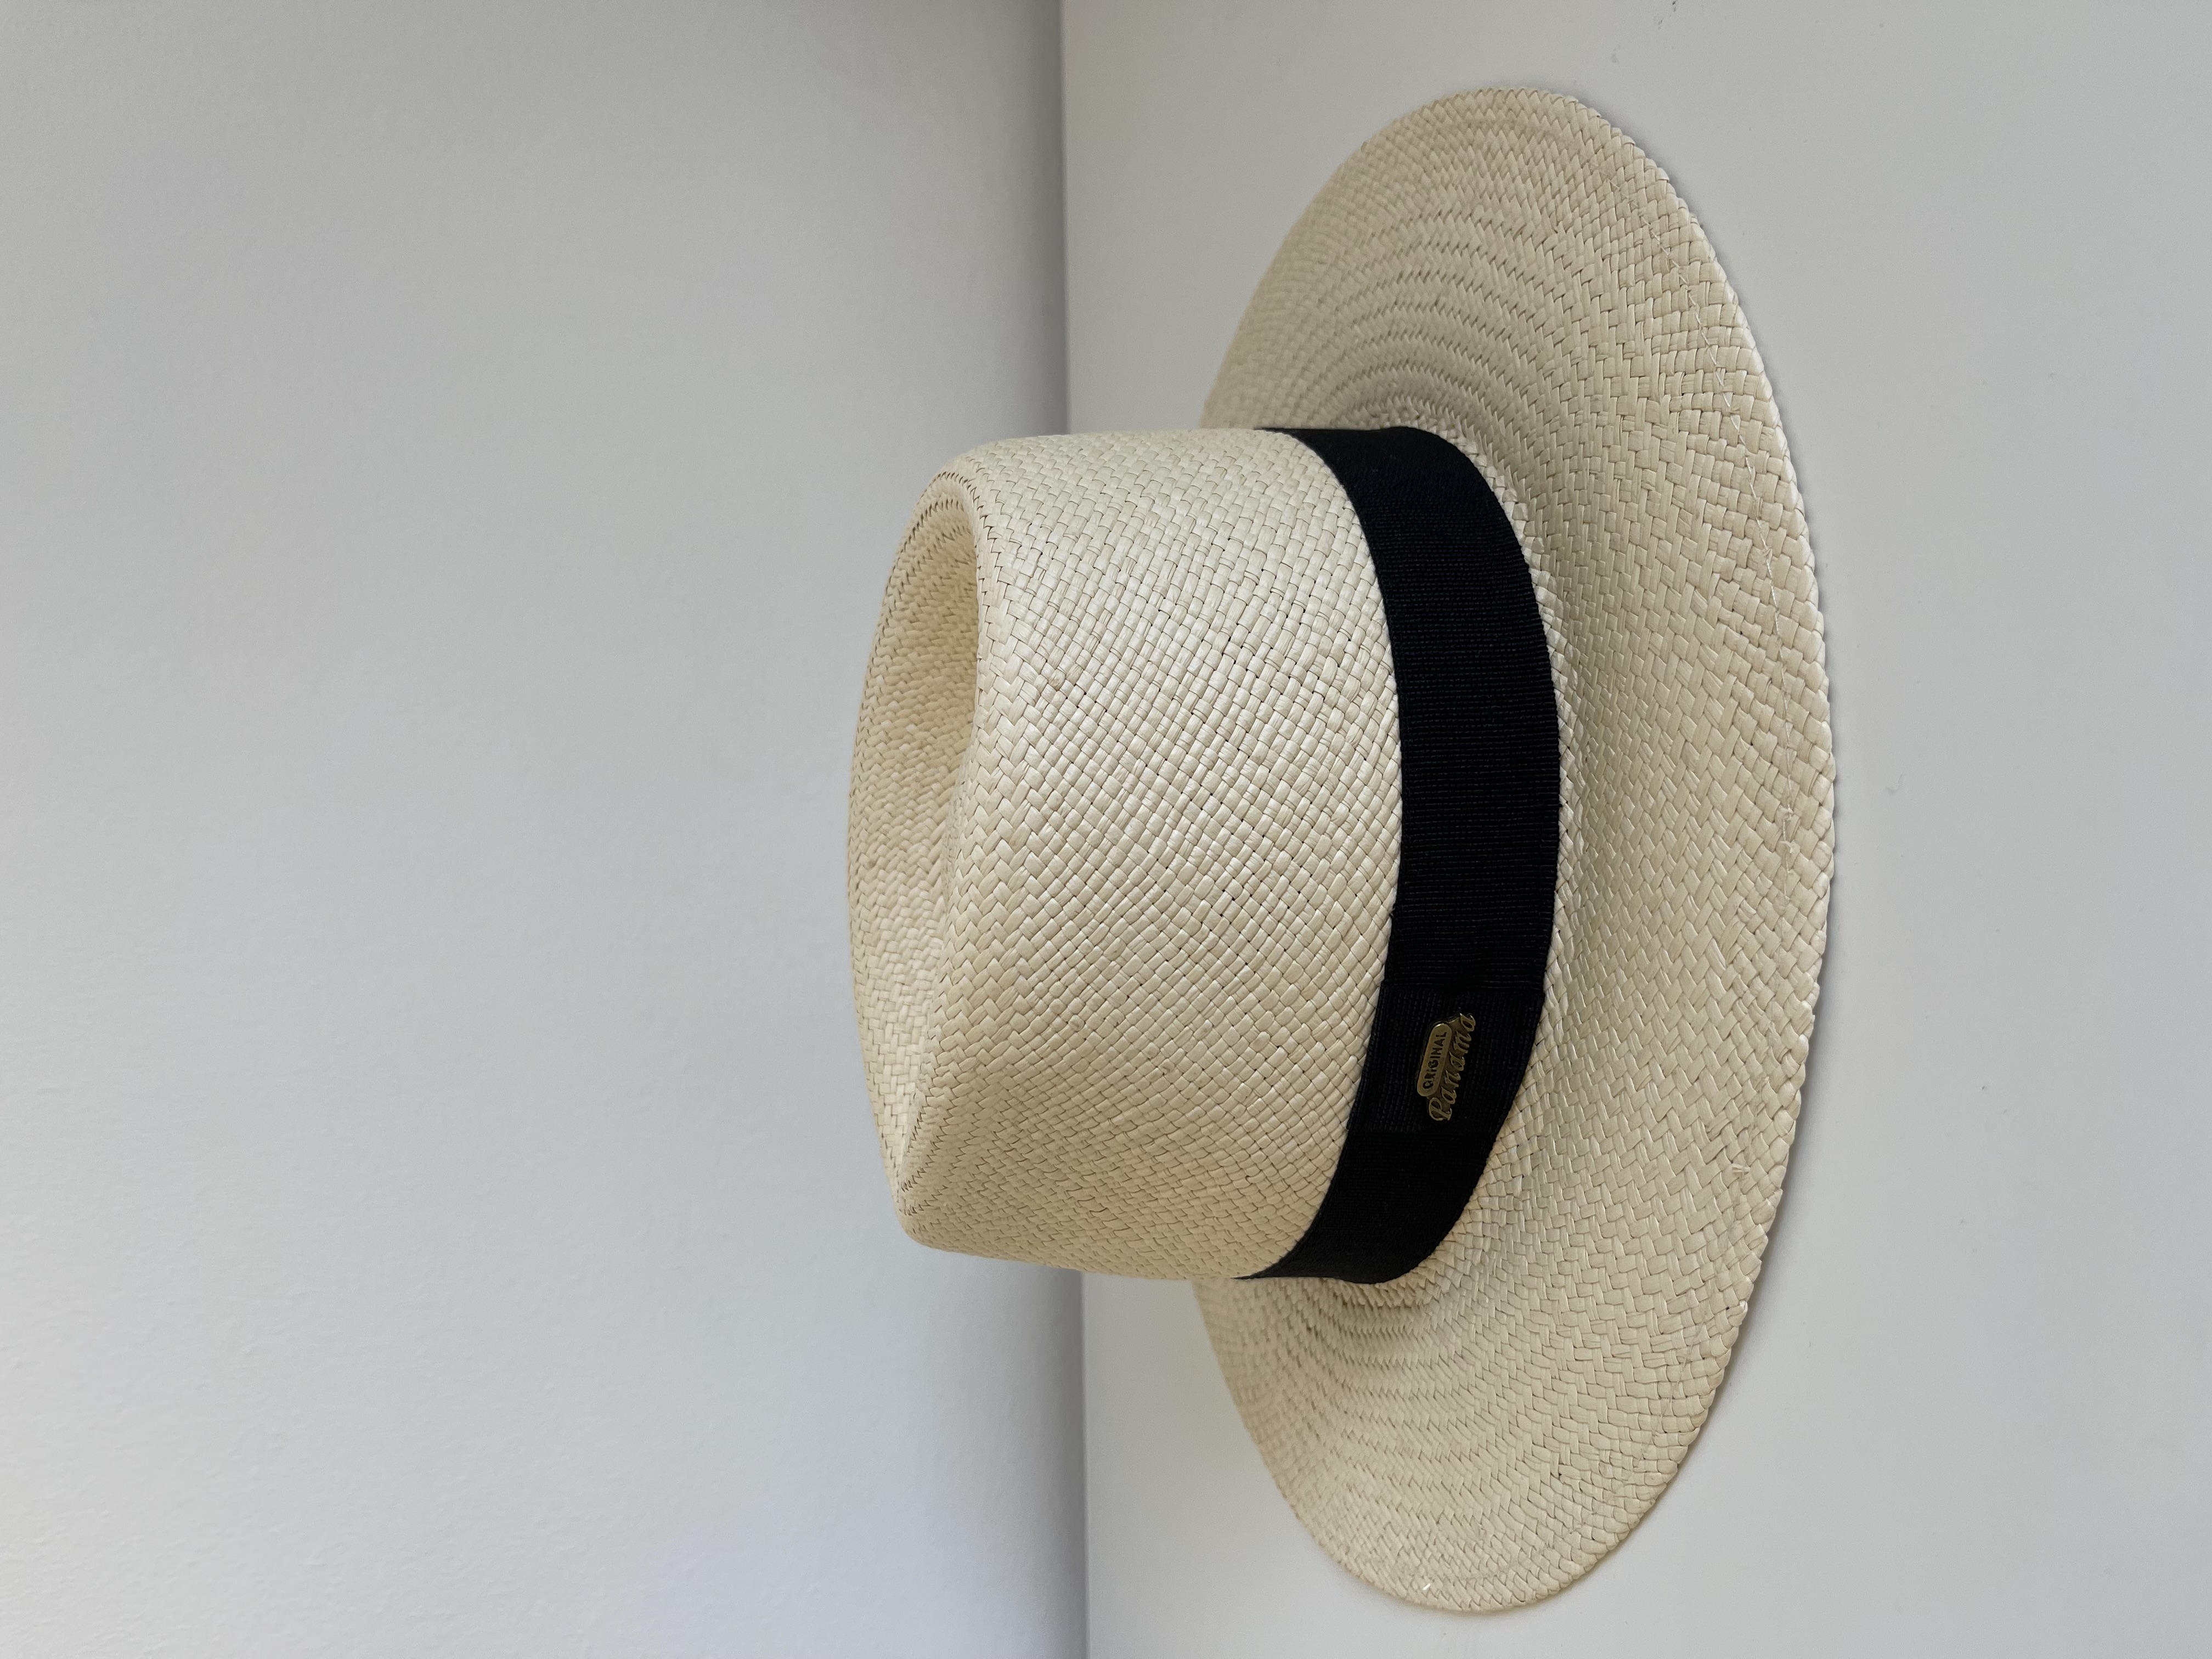 chapeau-panama-original-fait-en-italie-grand-format-selection-de-l-appatement-moeme-boutique-en-appartement-sur-rendez-vous-metz-moselle-eshop.jpg